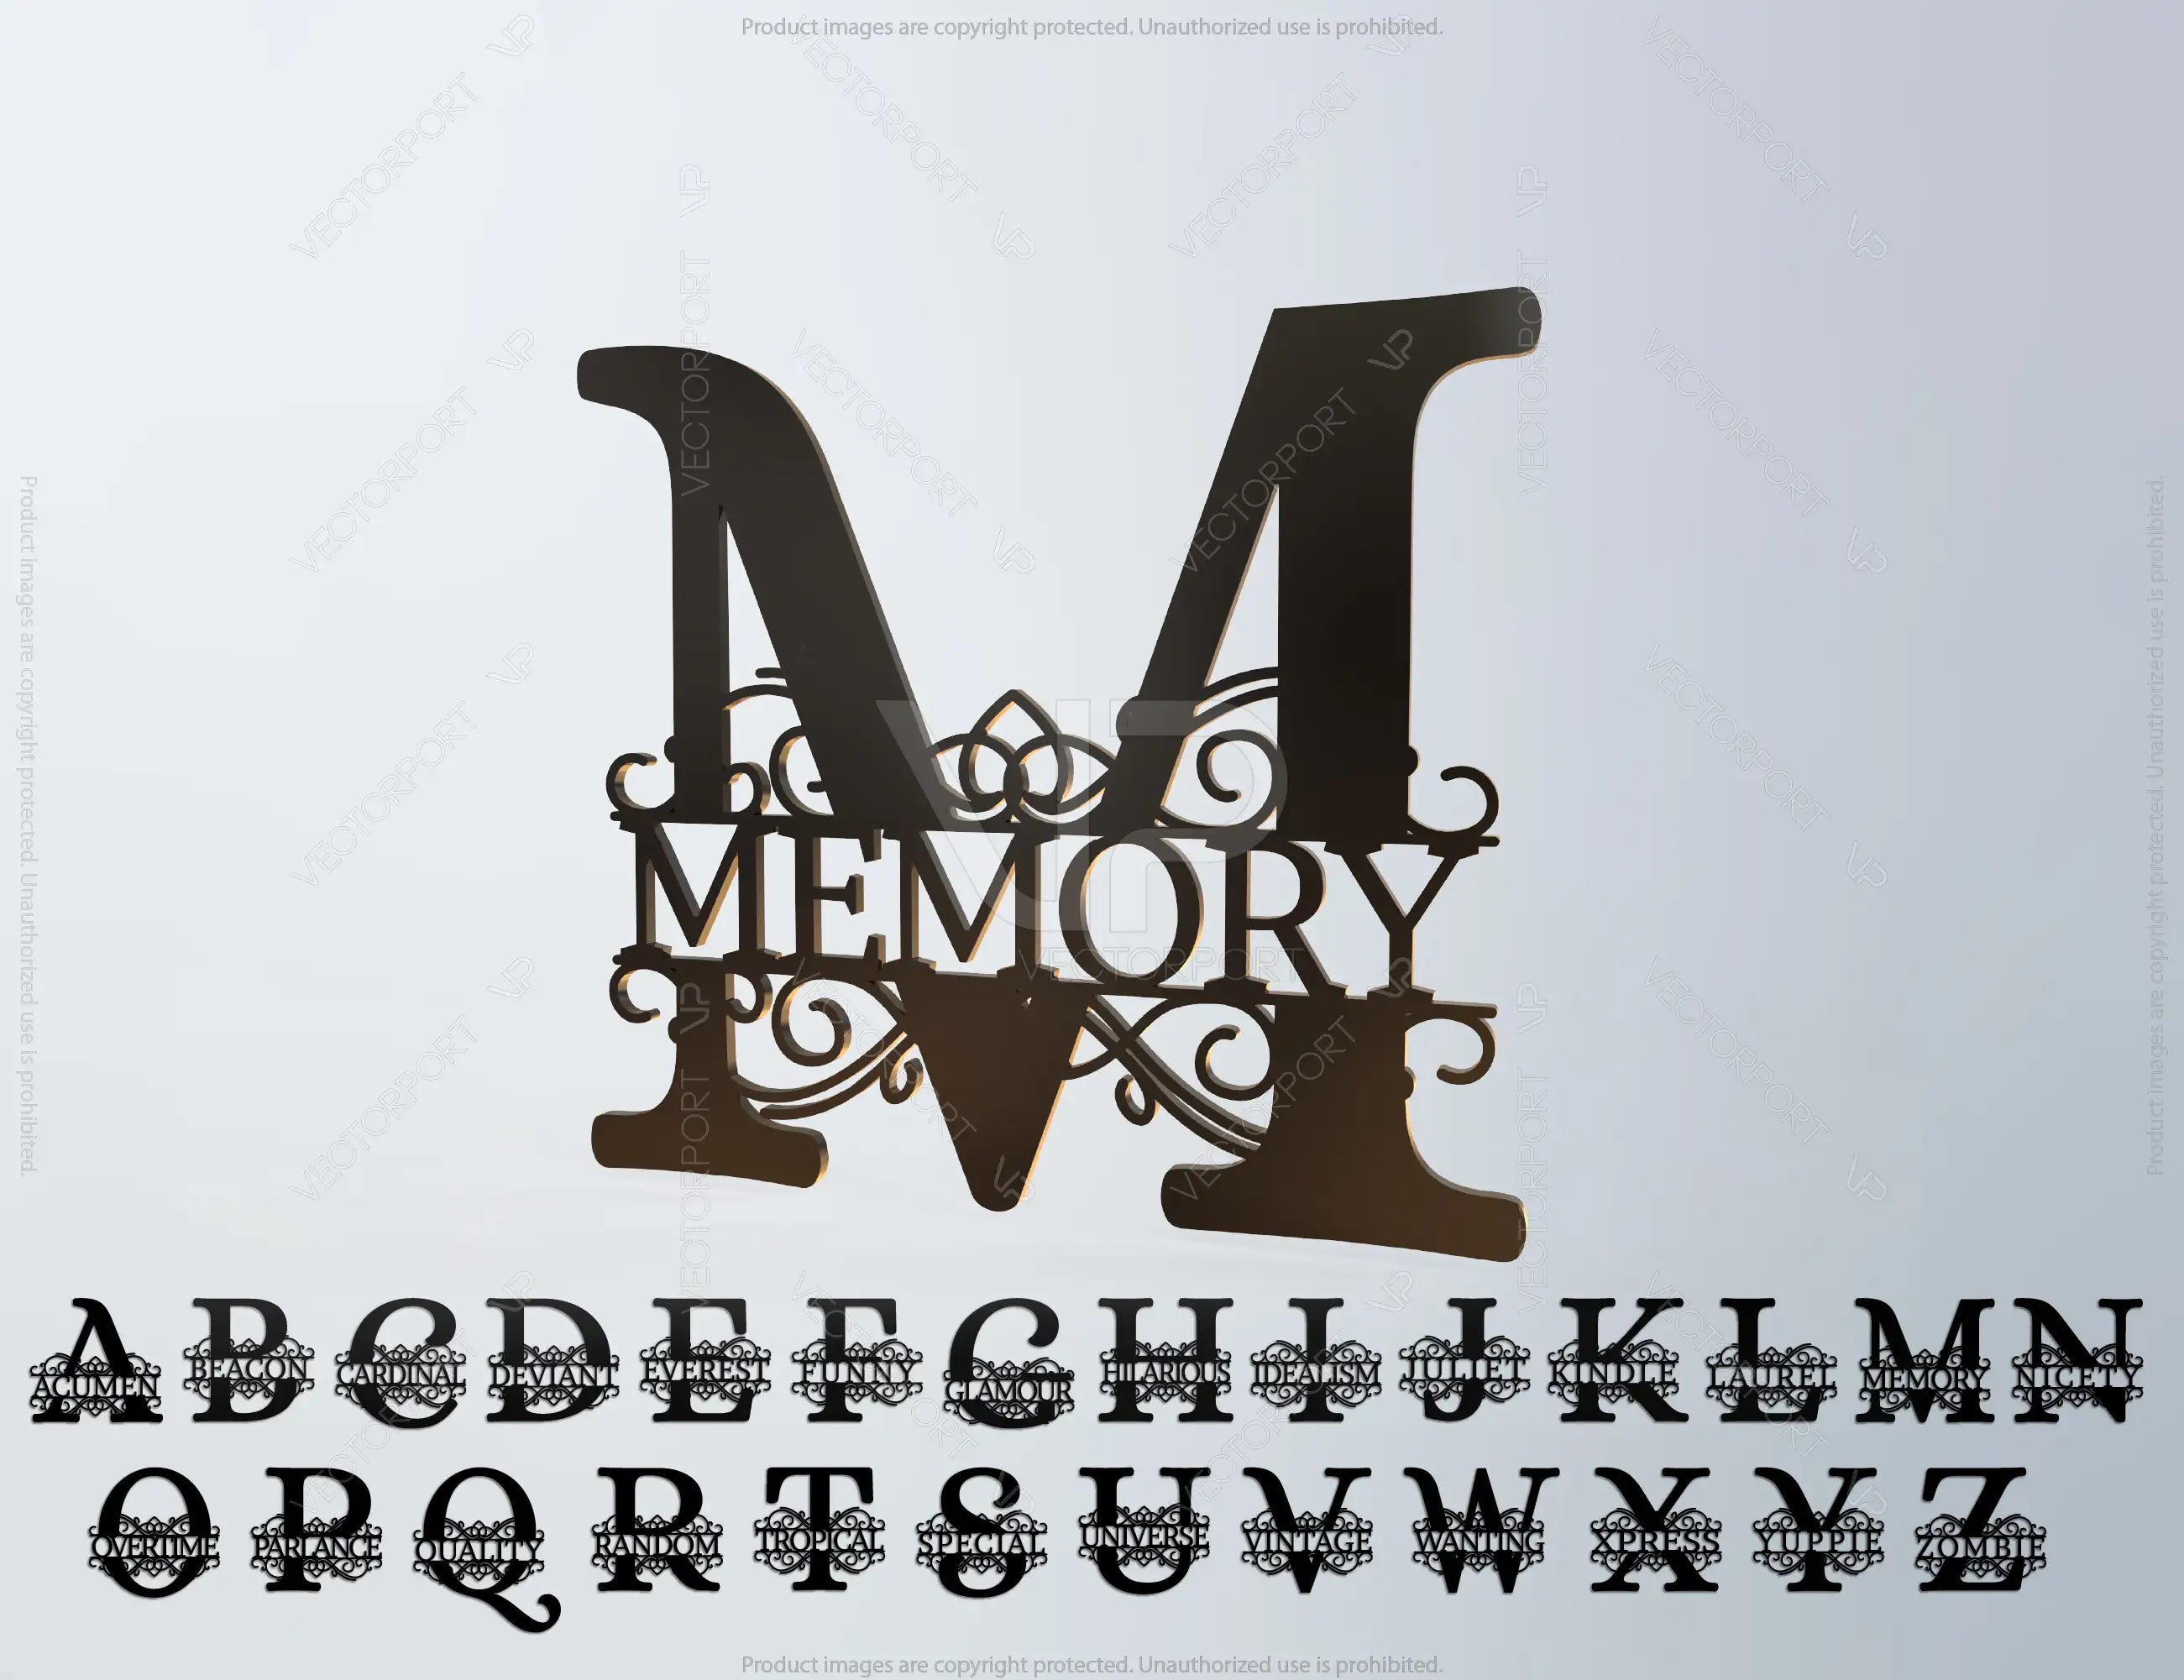 Split Regal Monogram Alphabet Letters Laser Cut Files | SVG, DXF, AI |#014|